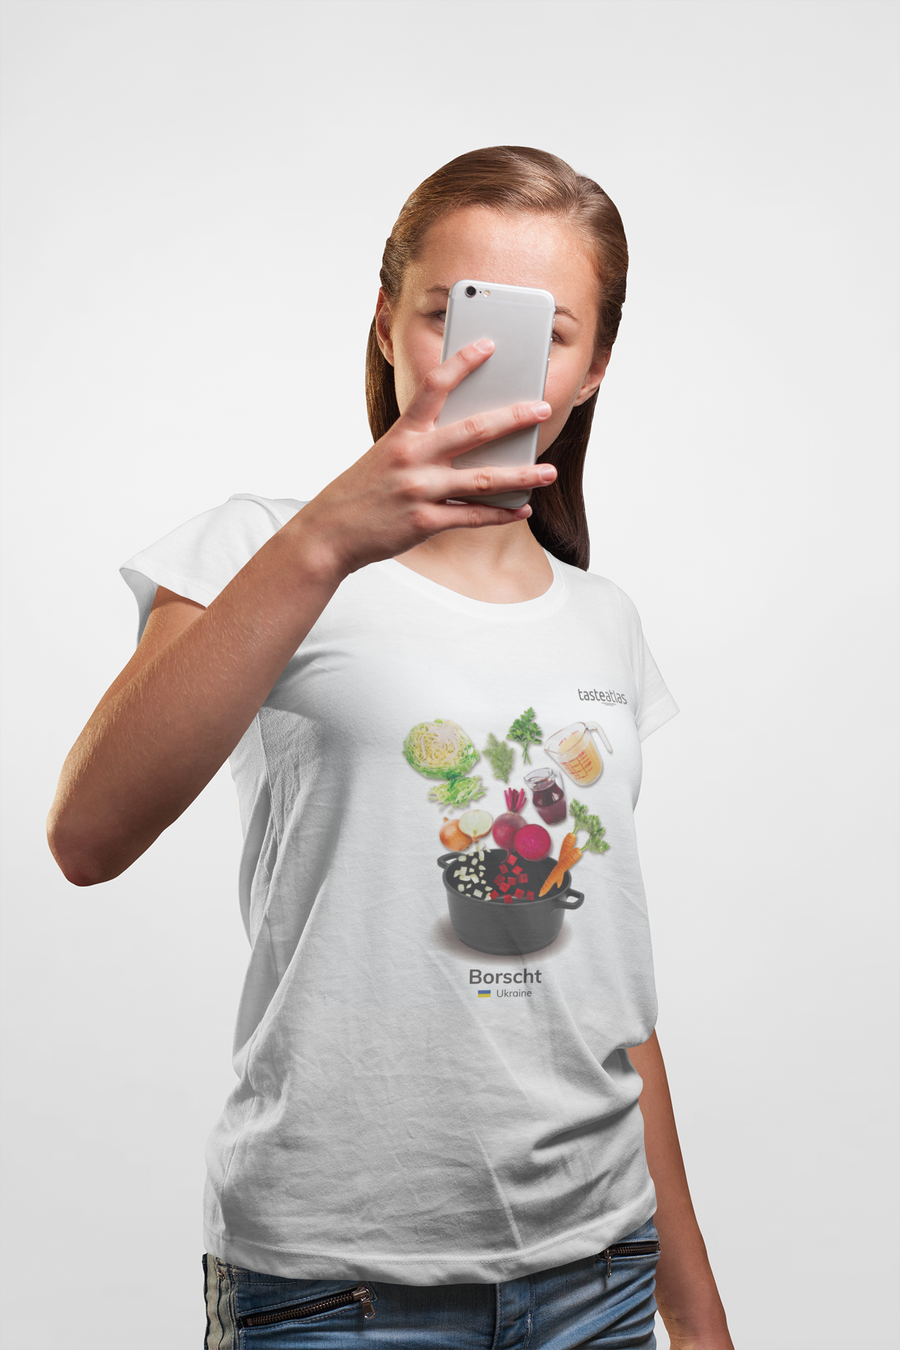 a woman taking selpfie wearing borscht t-shirt